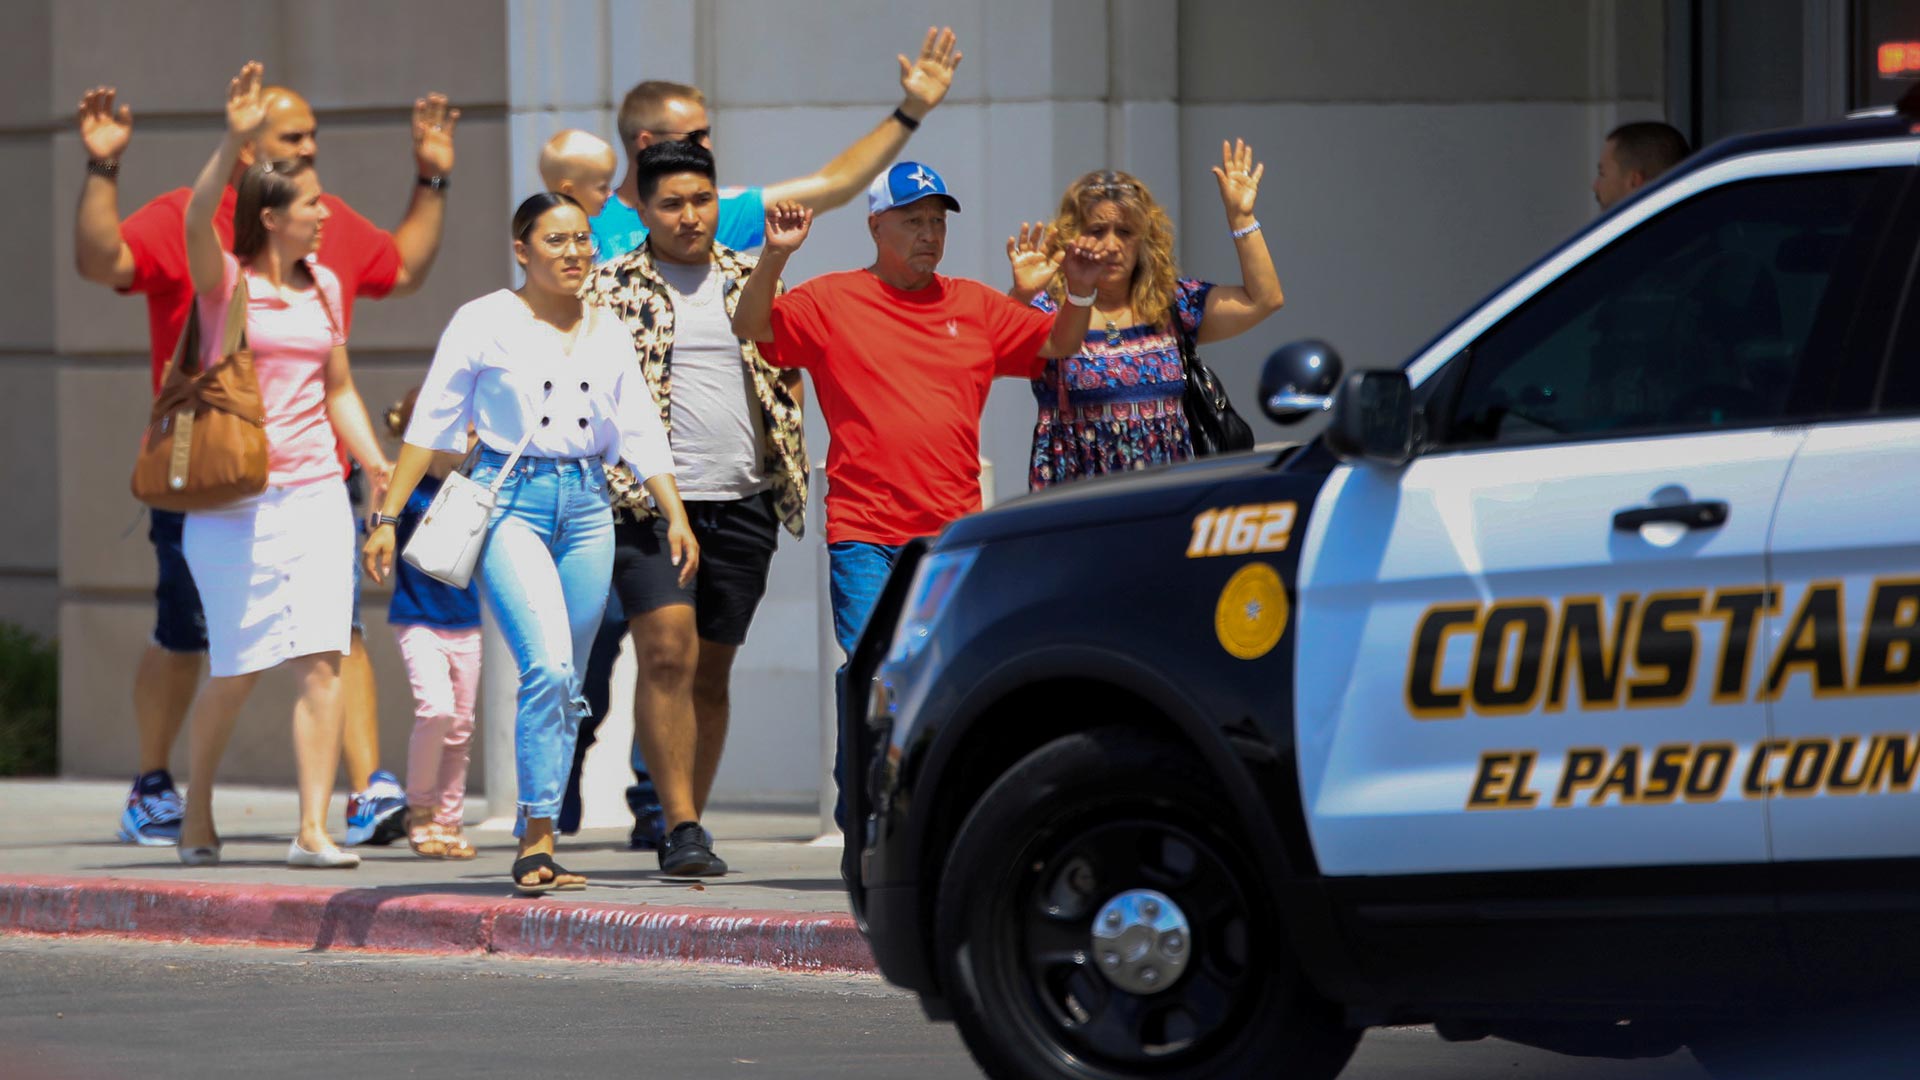 El atacante del centro comercial de El Paso alega una “invasión hispana”